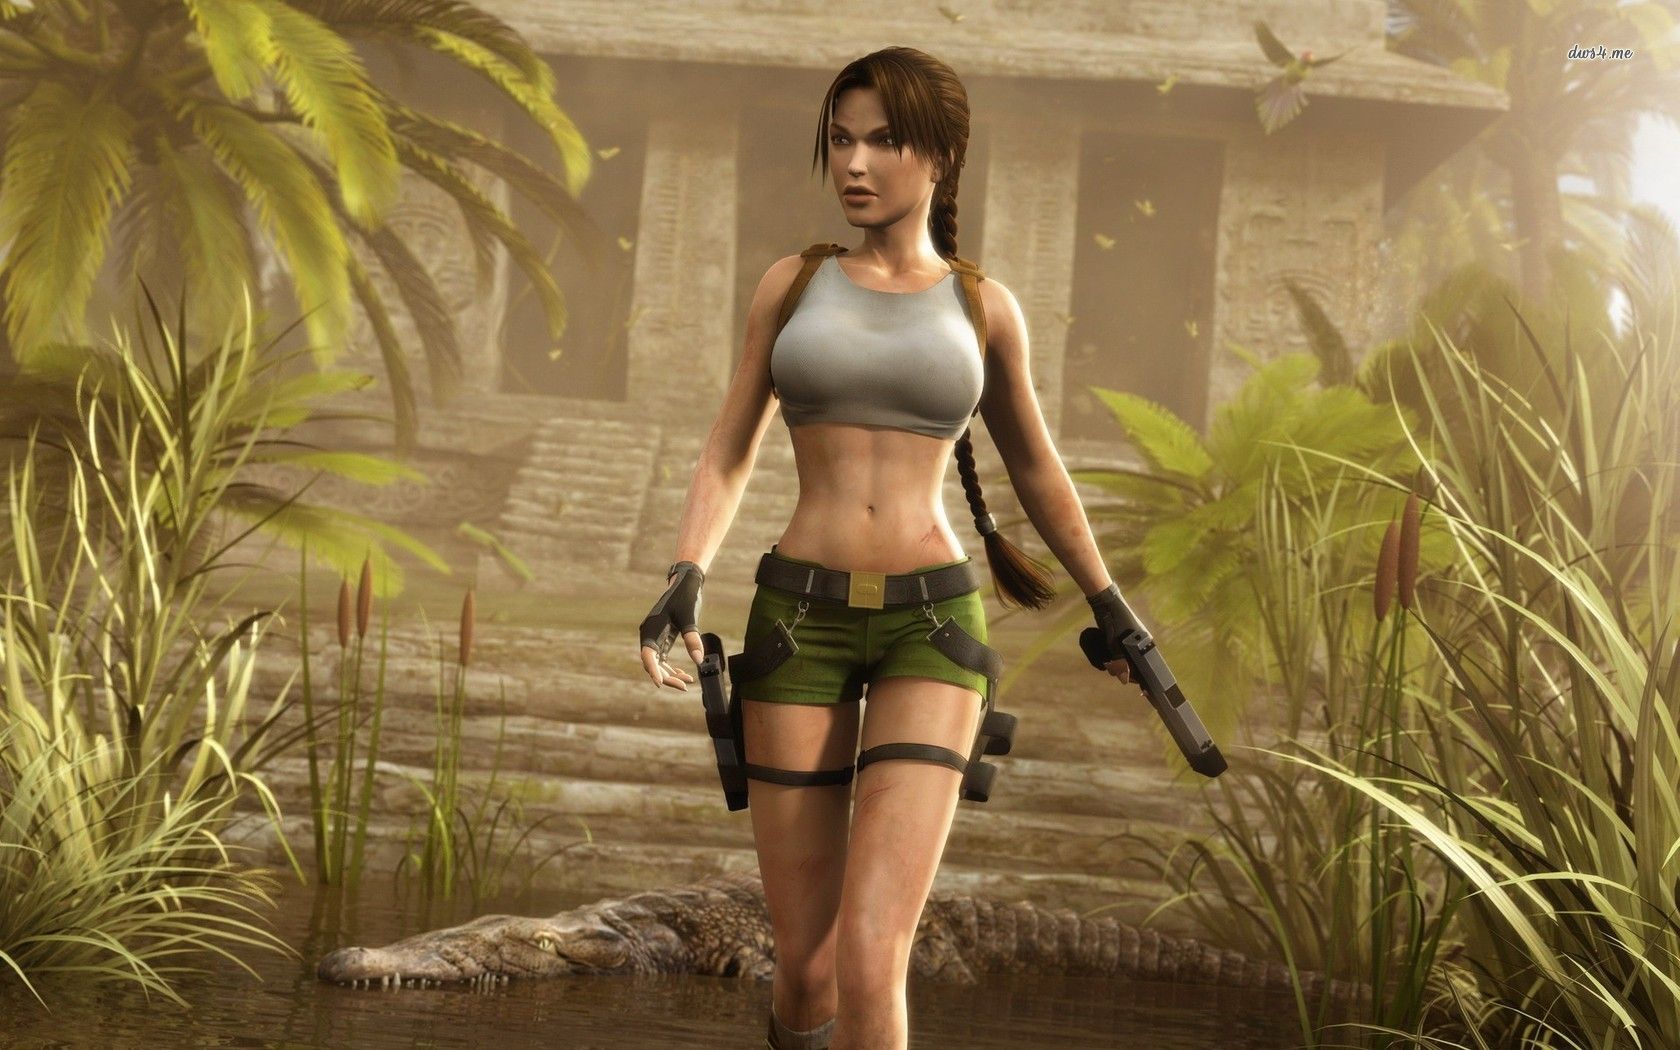 Rumor - Confirmado] Lara Croft pode ser próximo personagem a ganhar skin em Fortnite | Project N